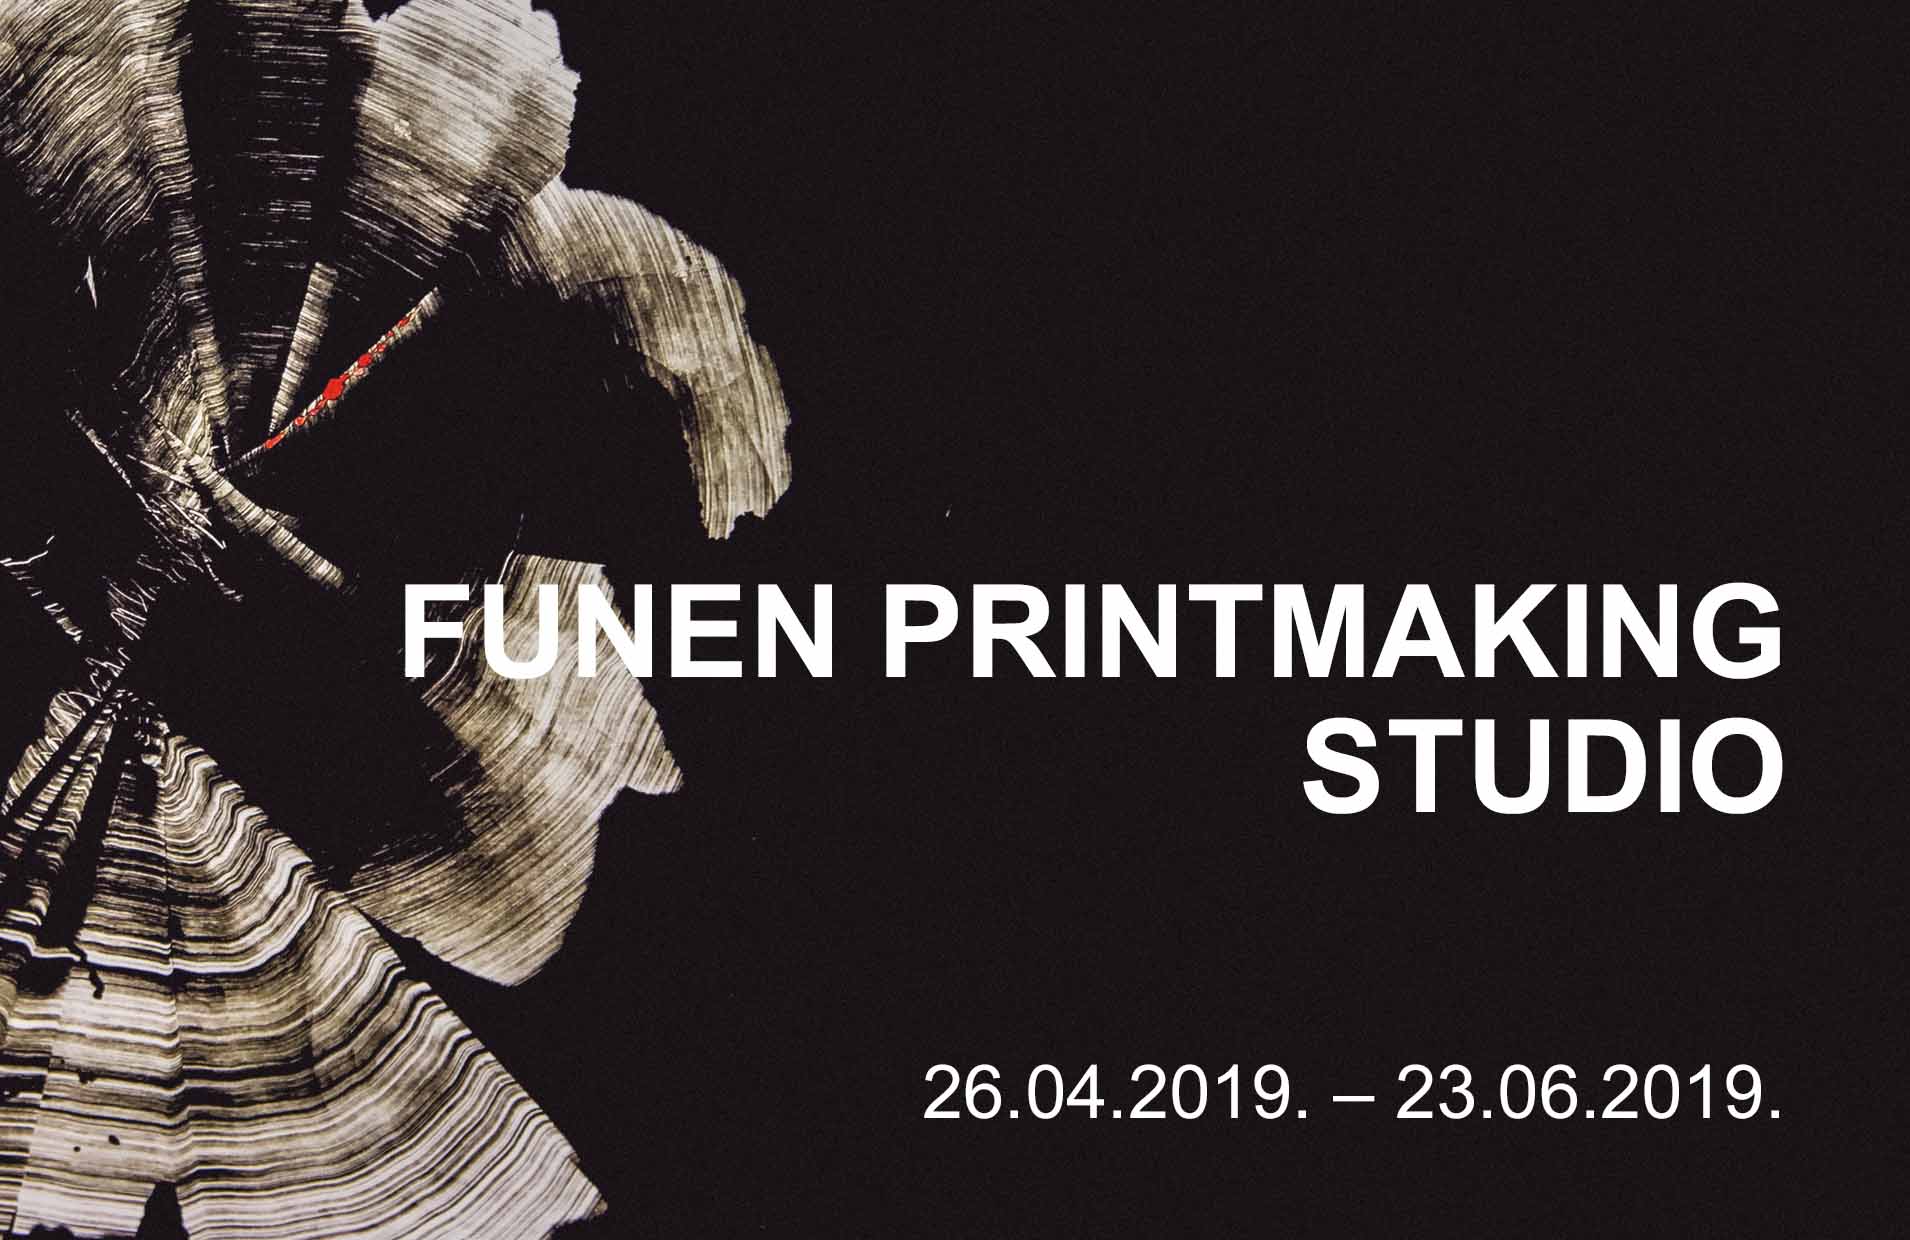 The Funen Printmaking Workshop – artist studio in Denmark